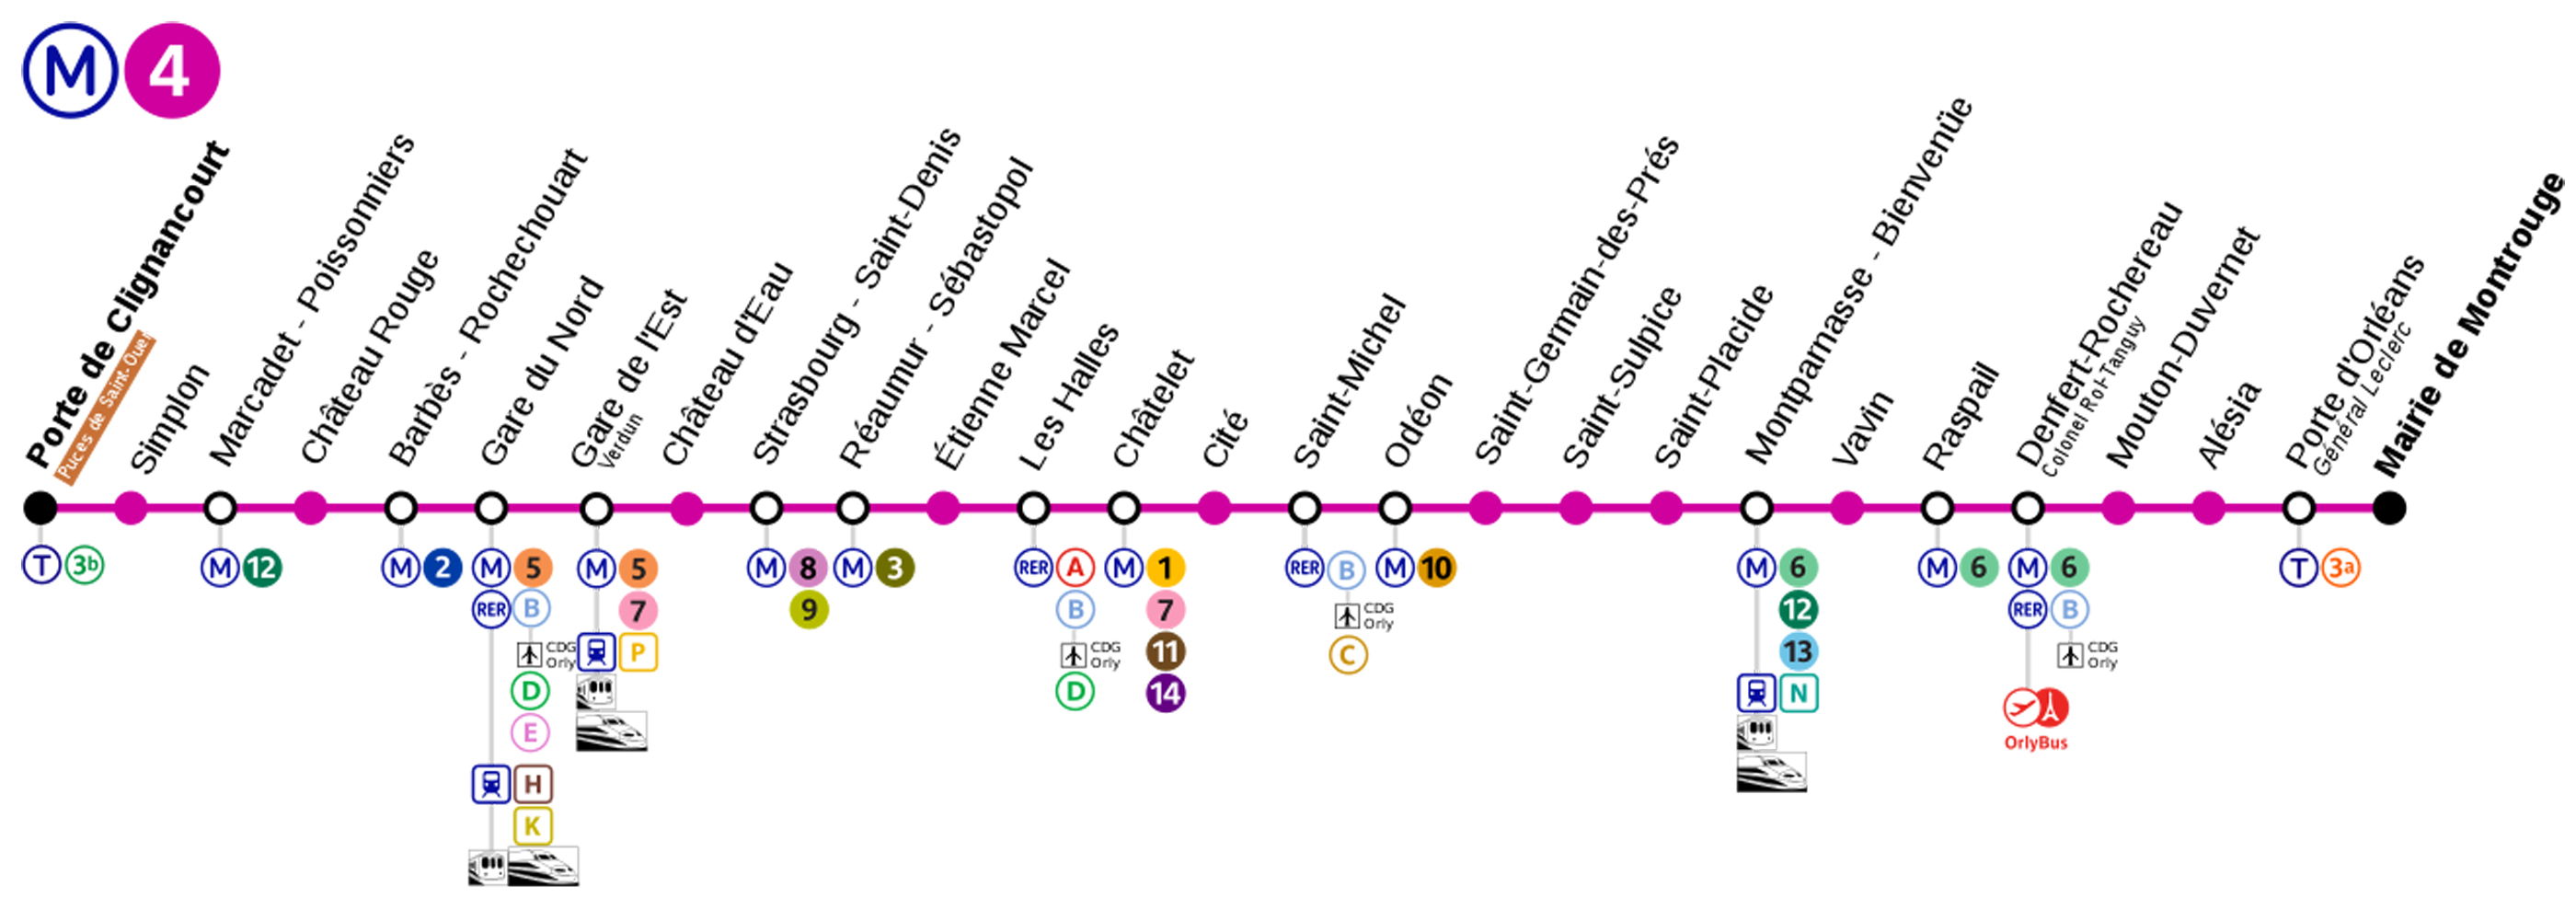 Plan du Métro Ligne 4 - Arrêt Chatelet